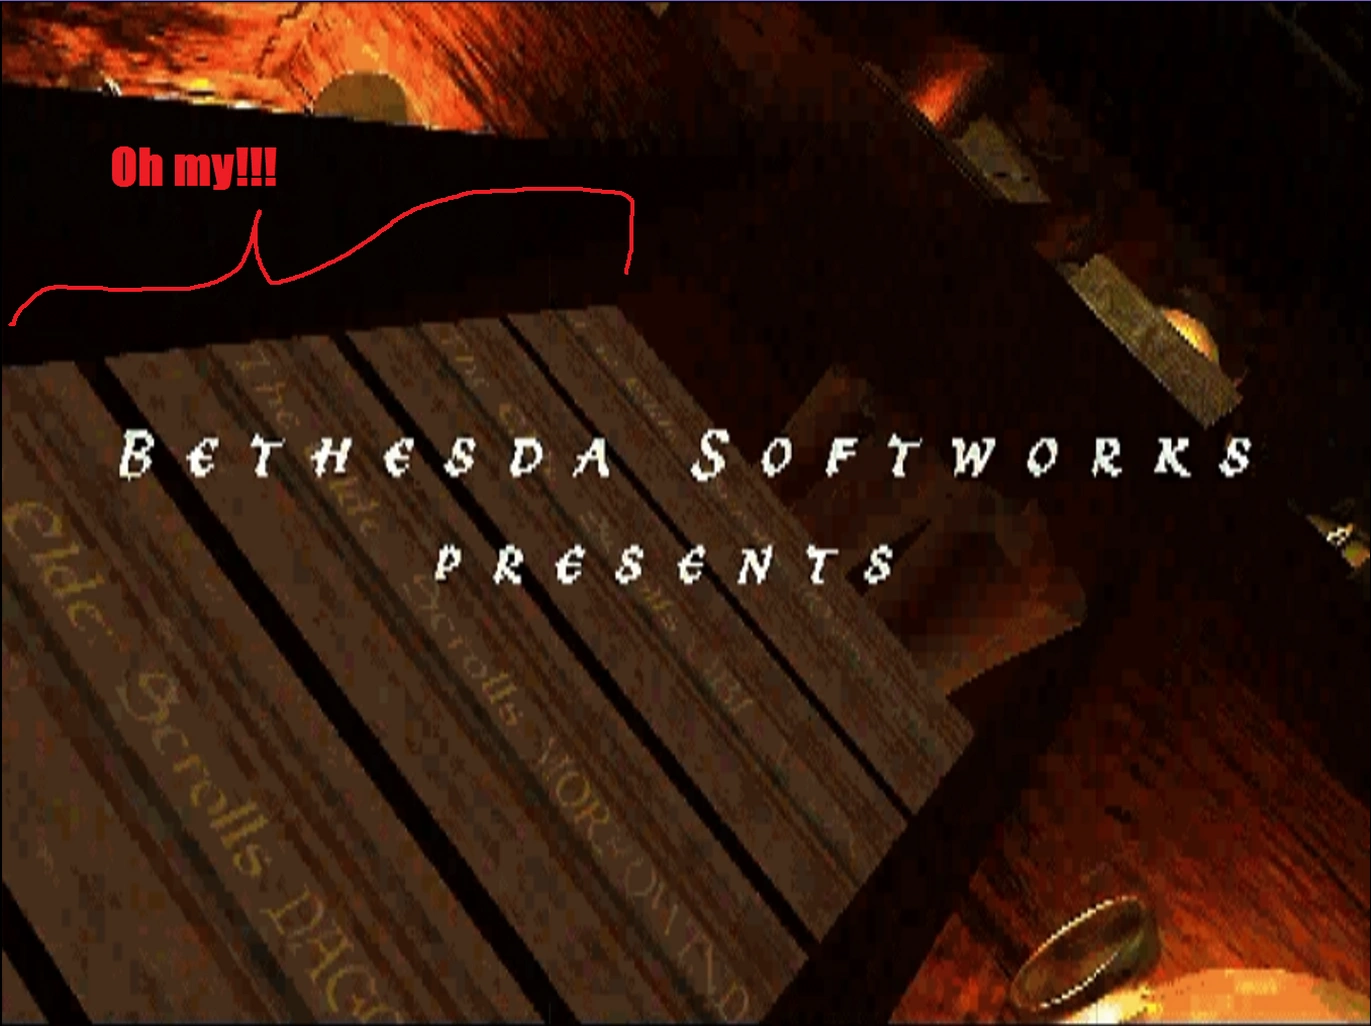 Книги с названиями игр в The Elder Scrolls: Redguard.